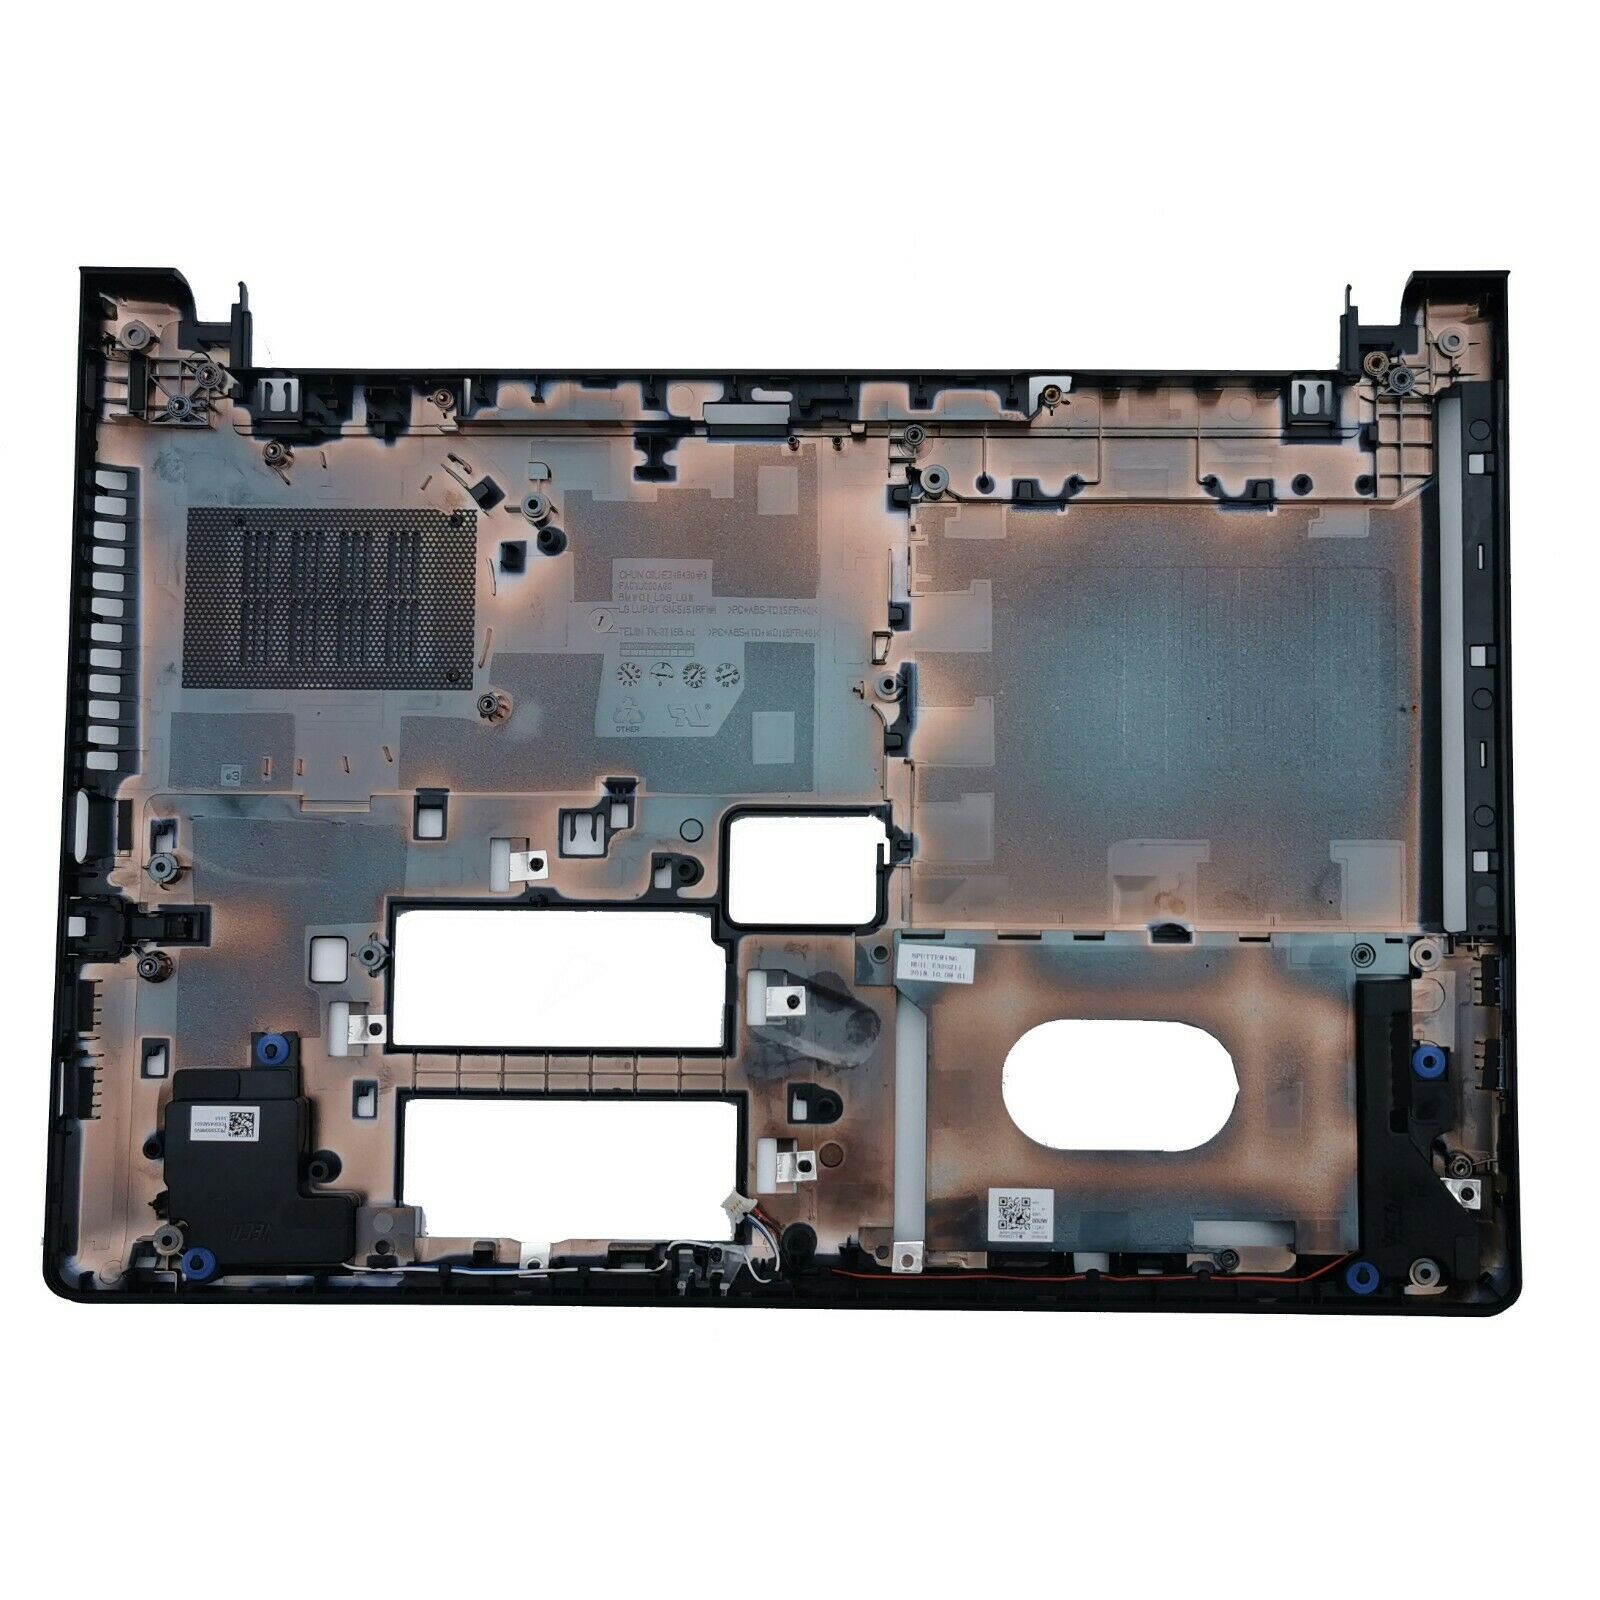 새로운 Lenovo Ideapad 300-14 300-14ibr 300-14isk 낮은 하단 기본 케이스 커버 3 주문